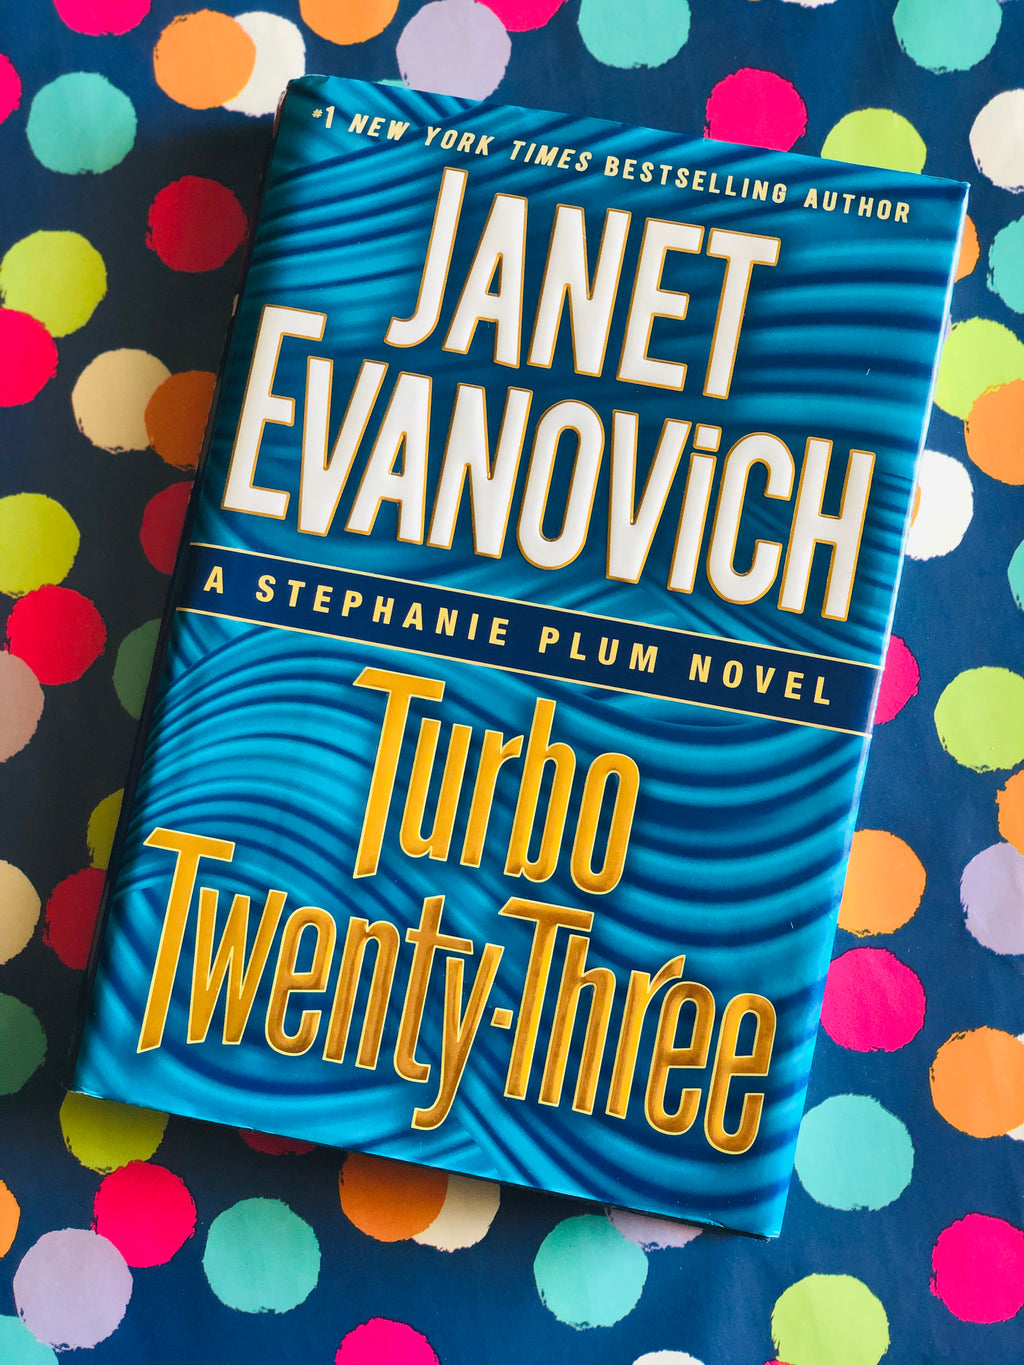 Janet Evanovich Turbo Twenty-Three - By Stephanie Plum